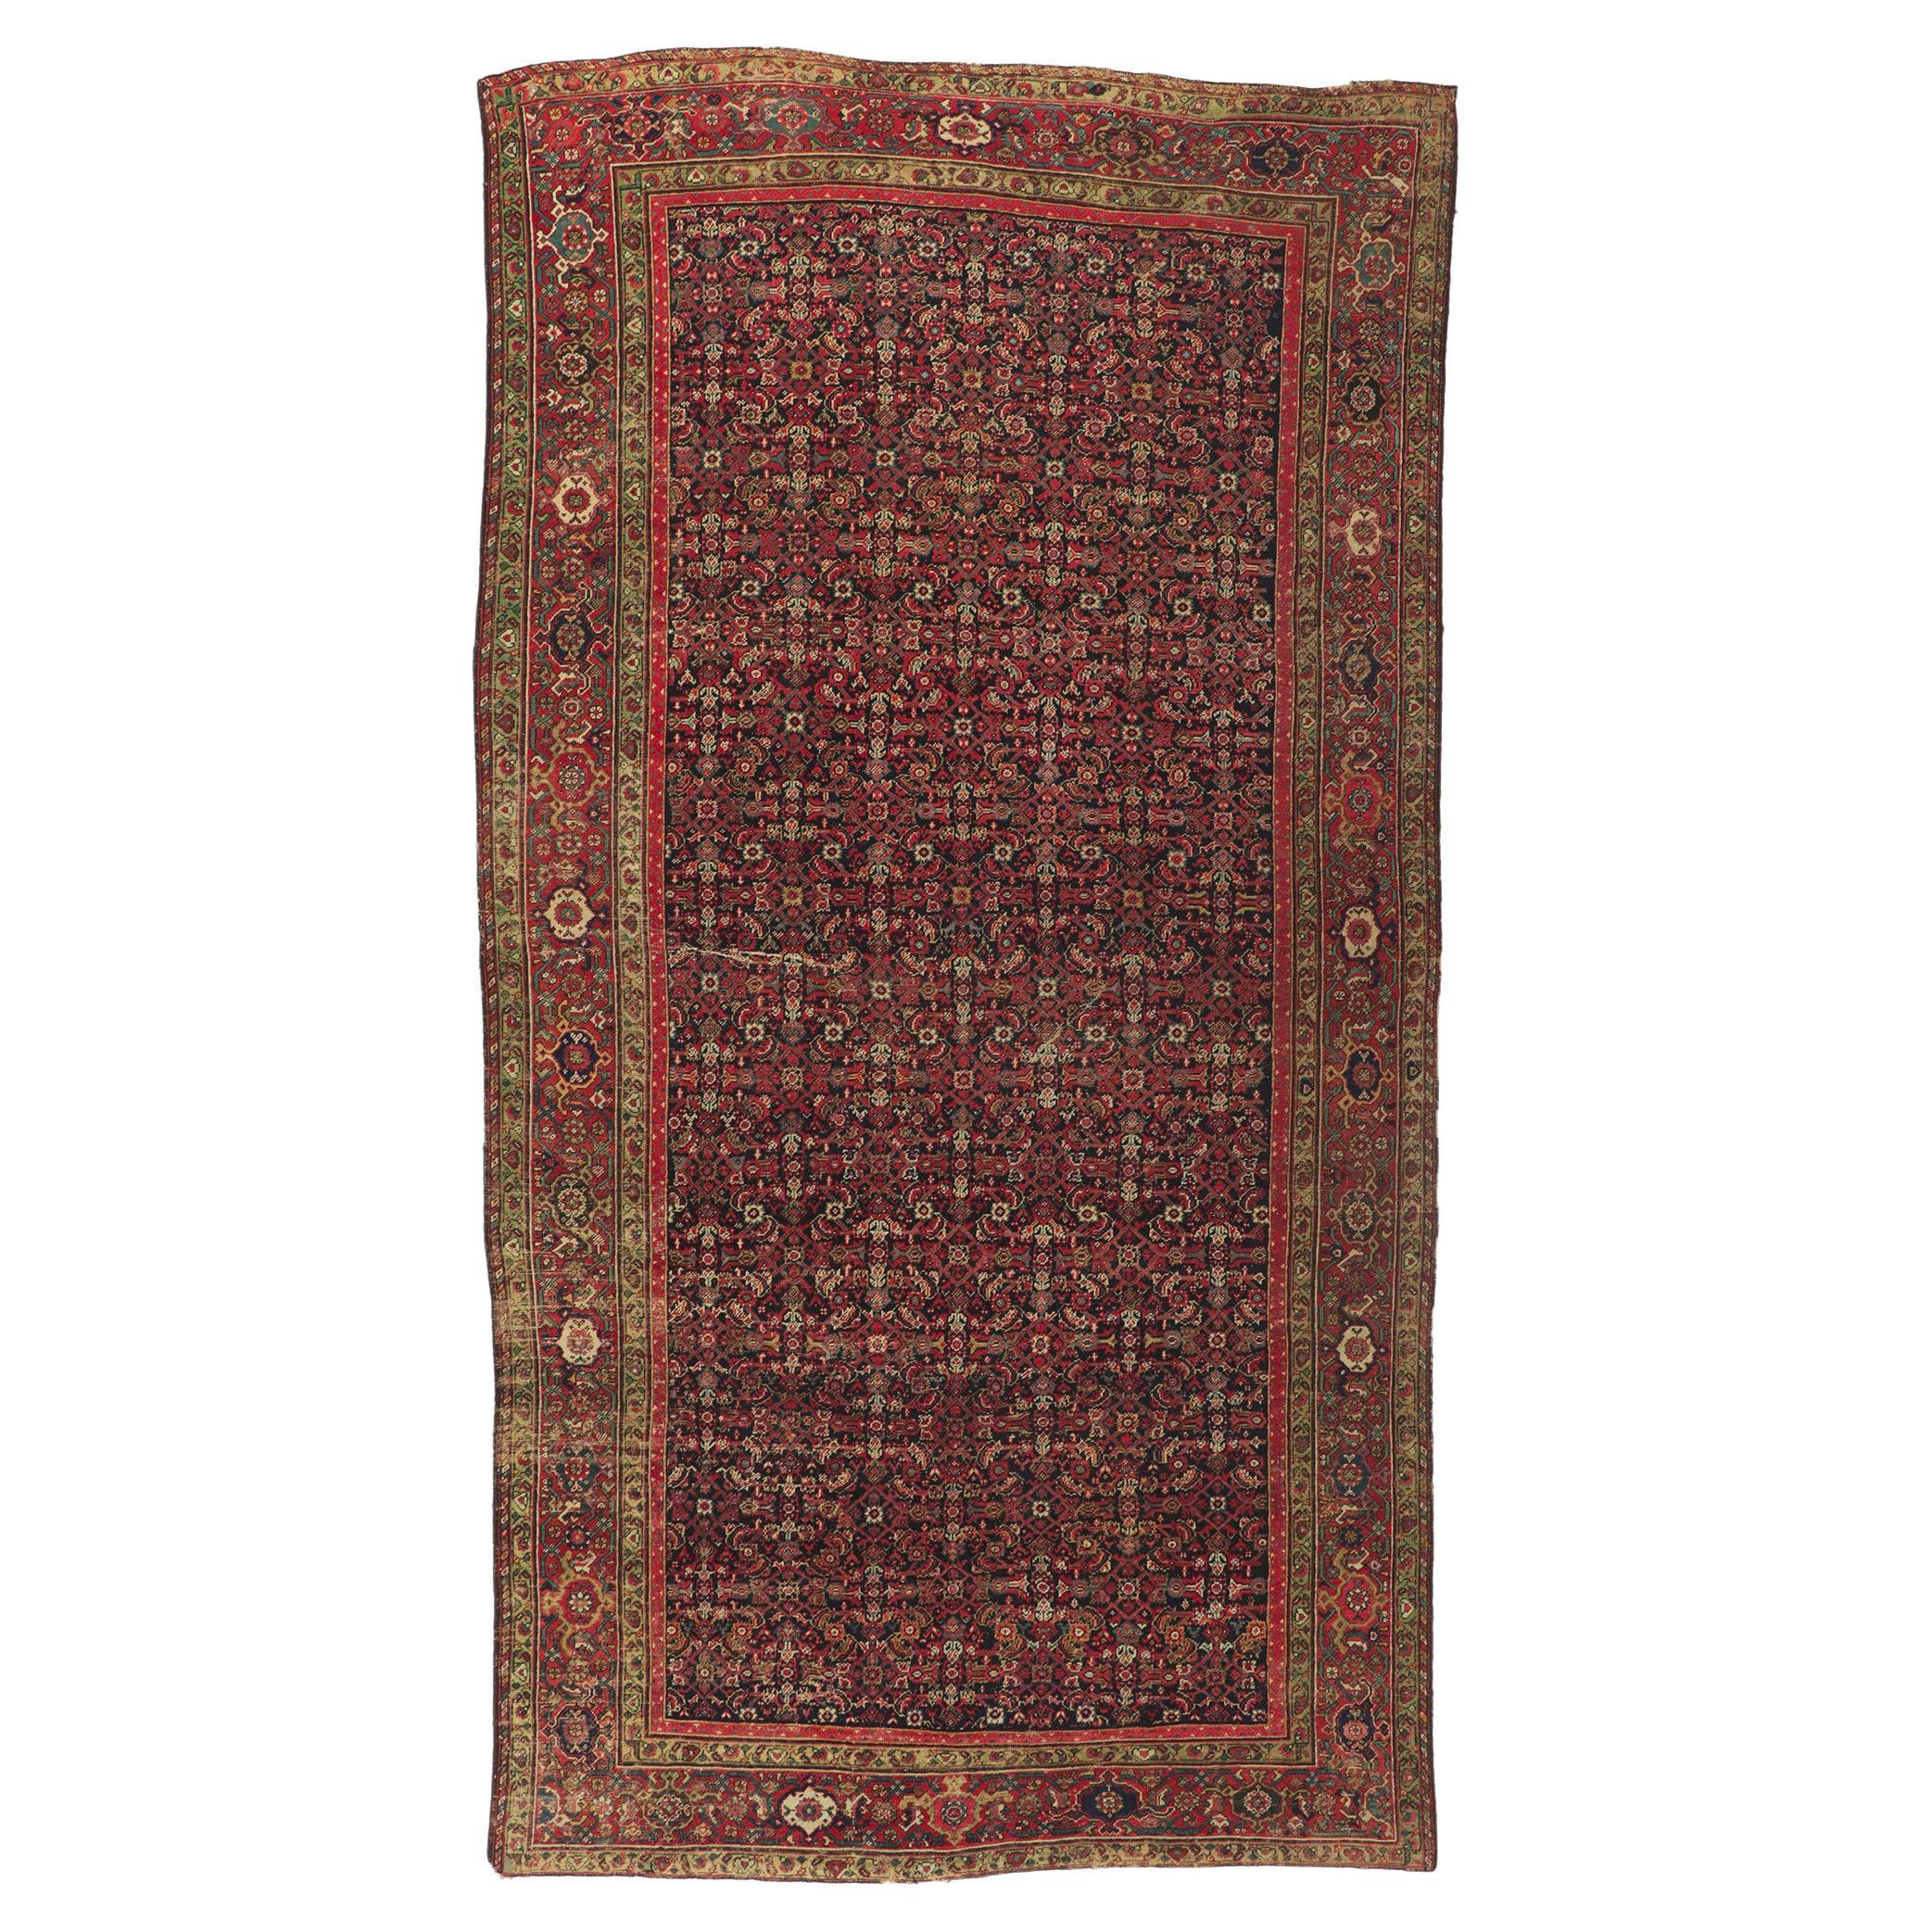 Antiker persischer Farahan-Galerie-Teppich aus dem späten 19. Jahrhundert